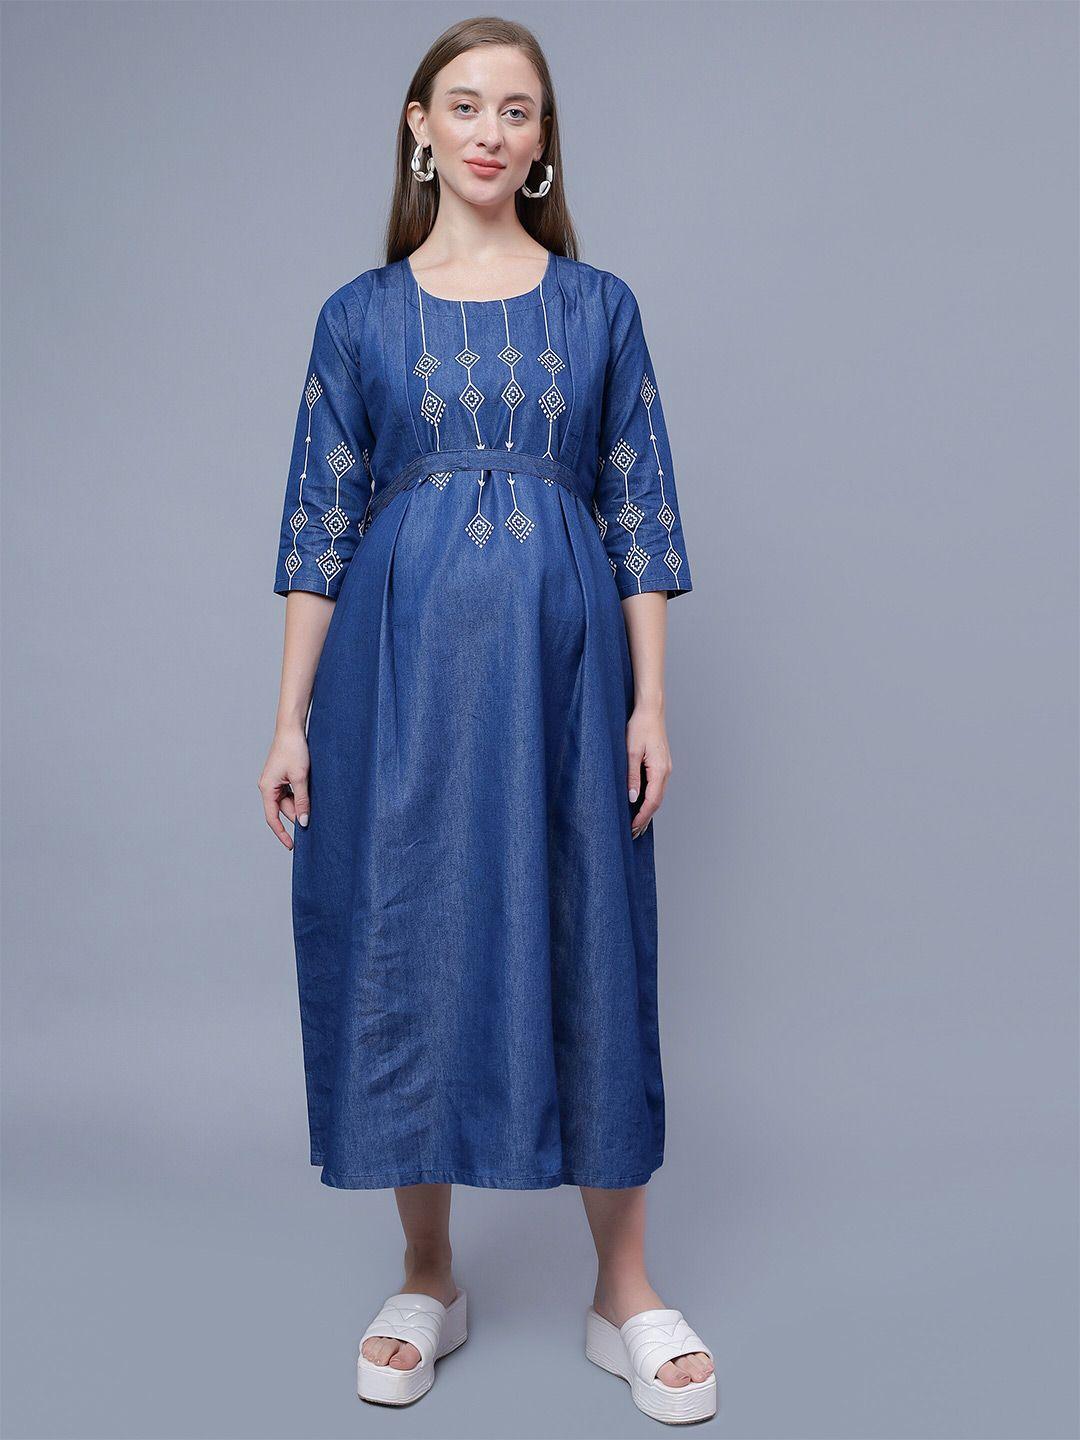 nightspree-ethnic-motifs-print-denim-maternity-fit-&-flare-midi-cotton-dress